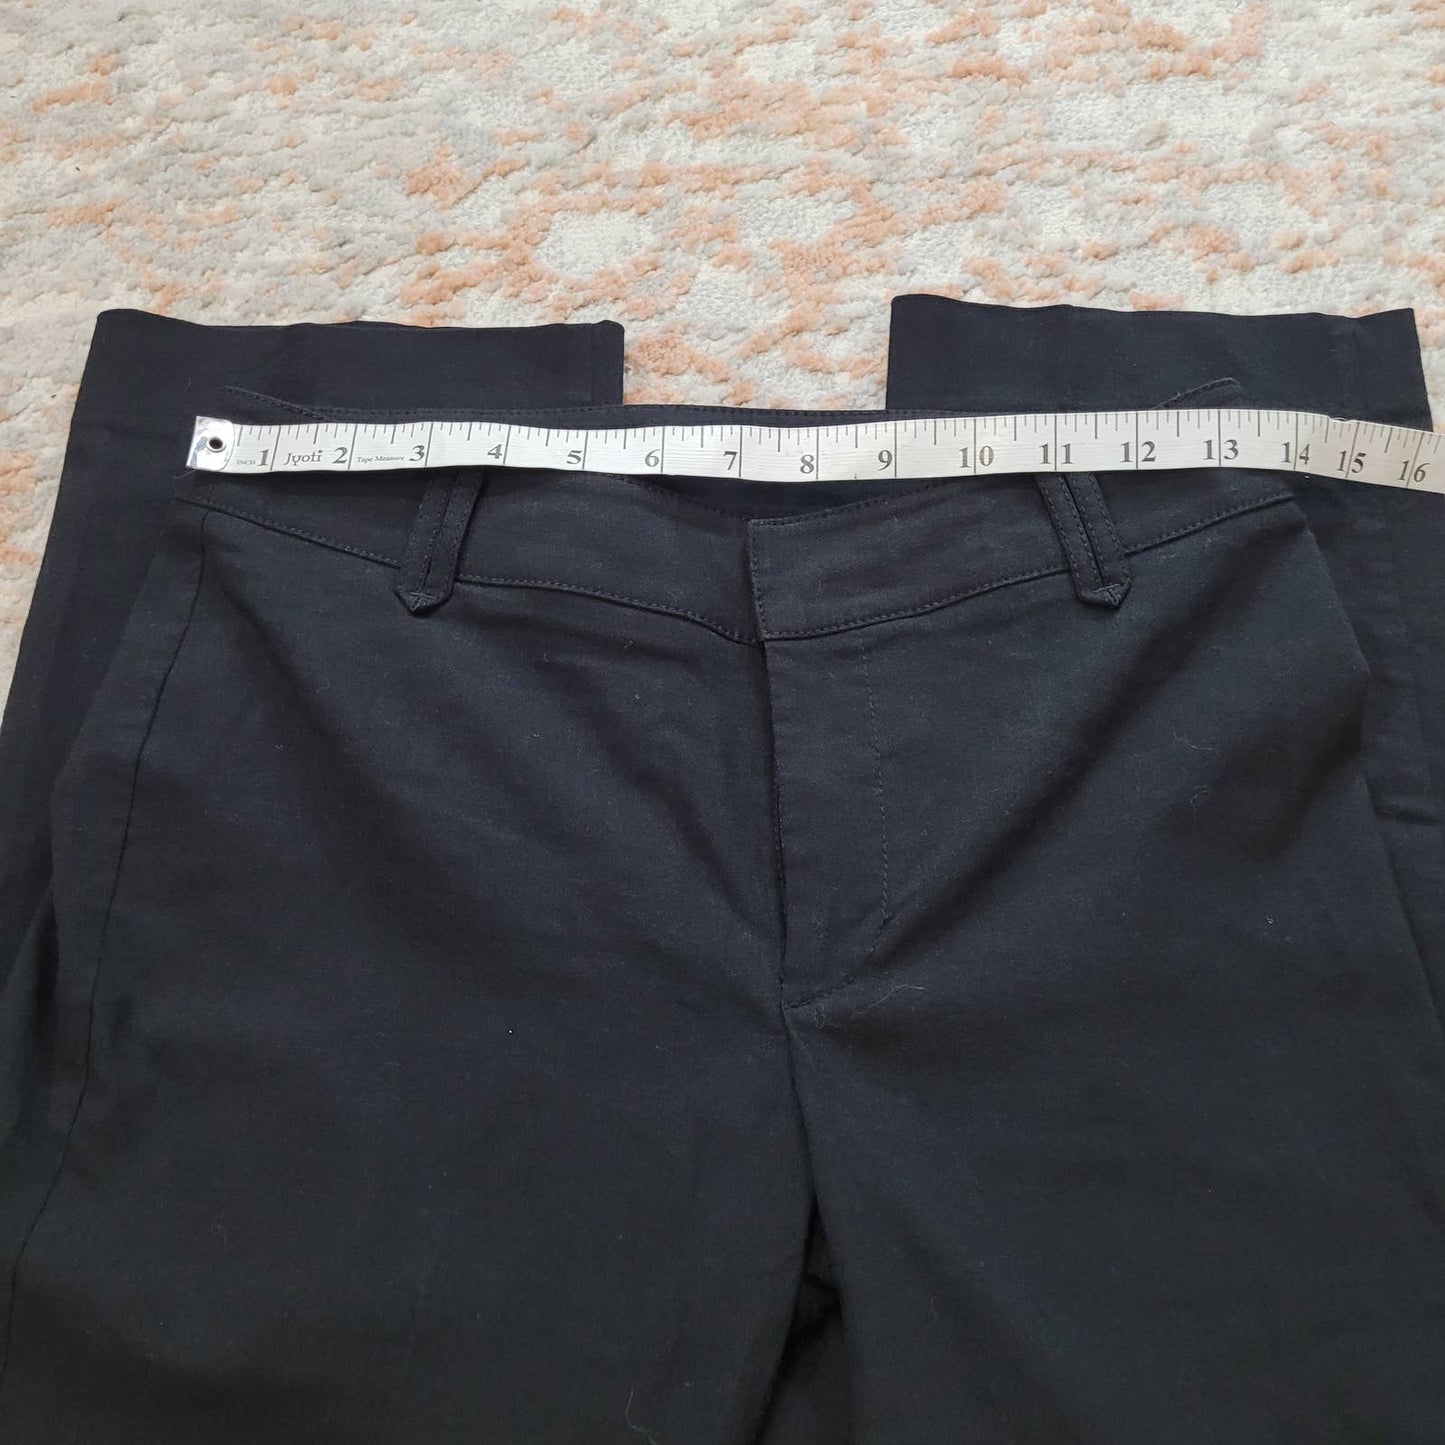 Mexx Black Dress Pants - Size 6